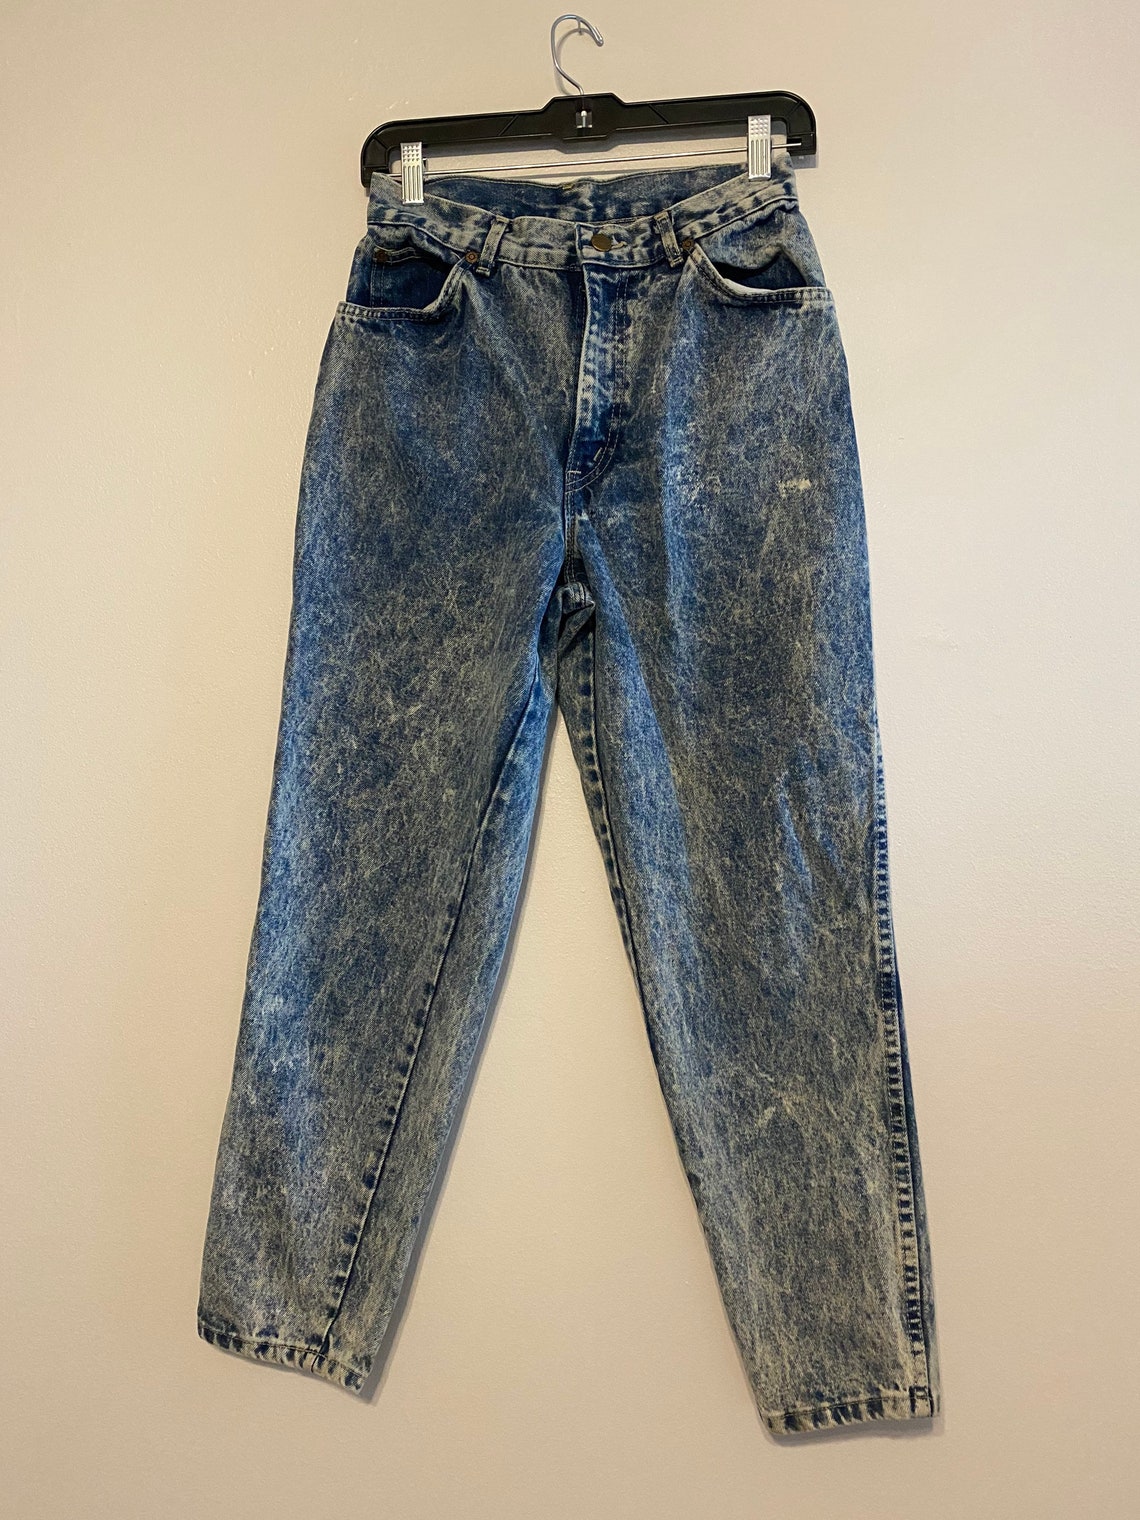 Chic Jeans, Vintage Denim, Vintage Jeans, Vintage Clothing, Acid Wash ...